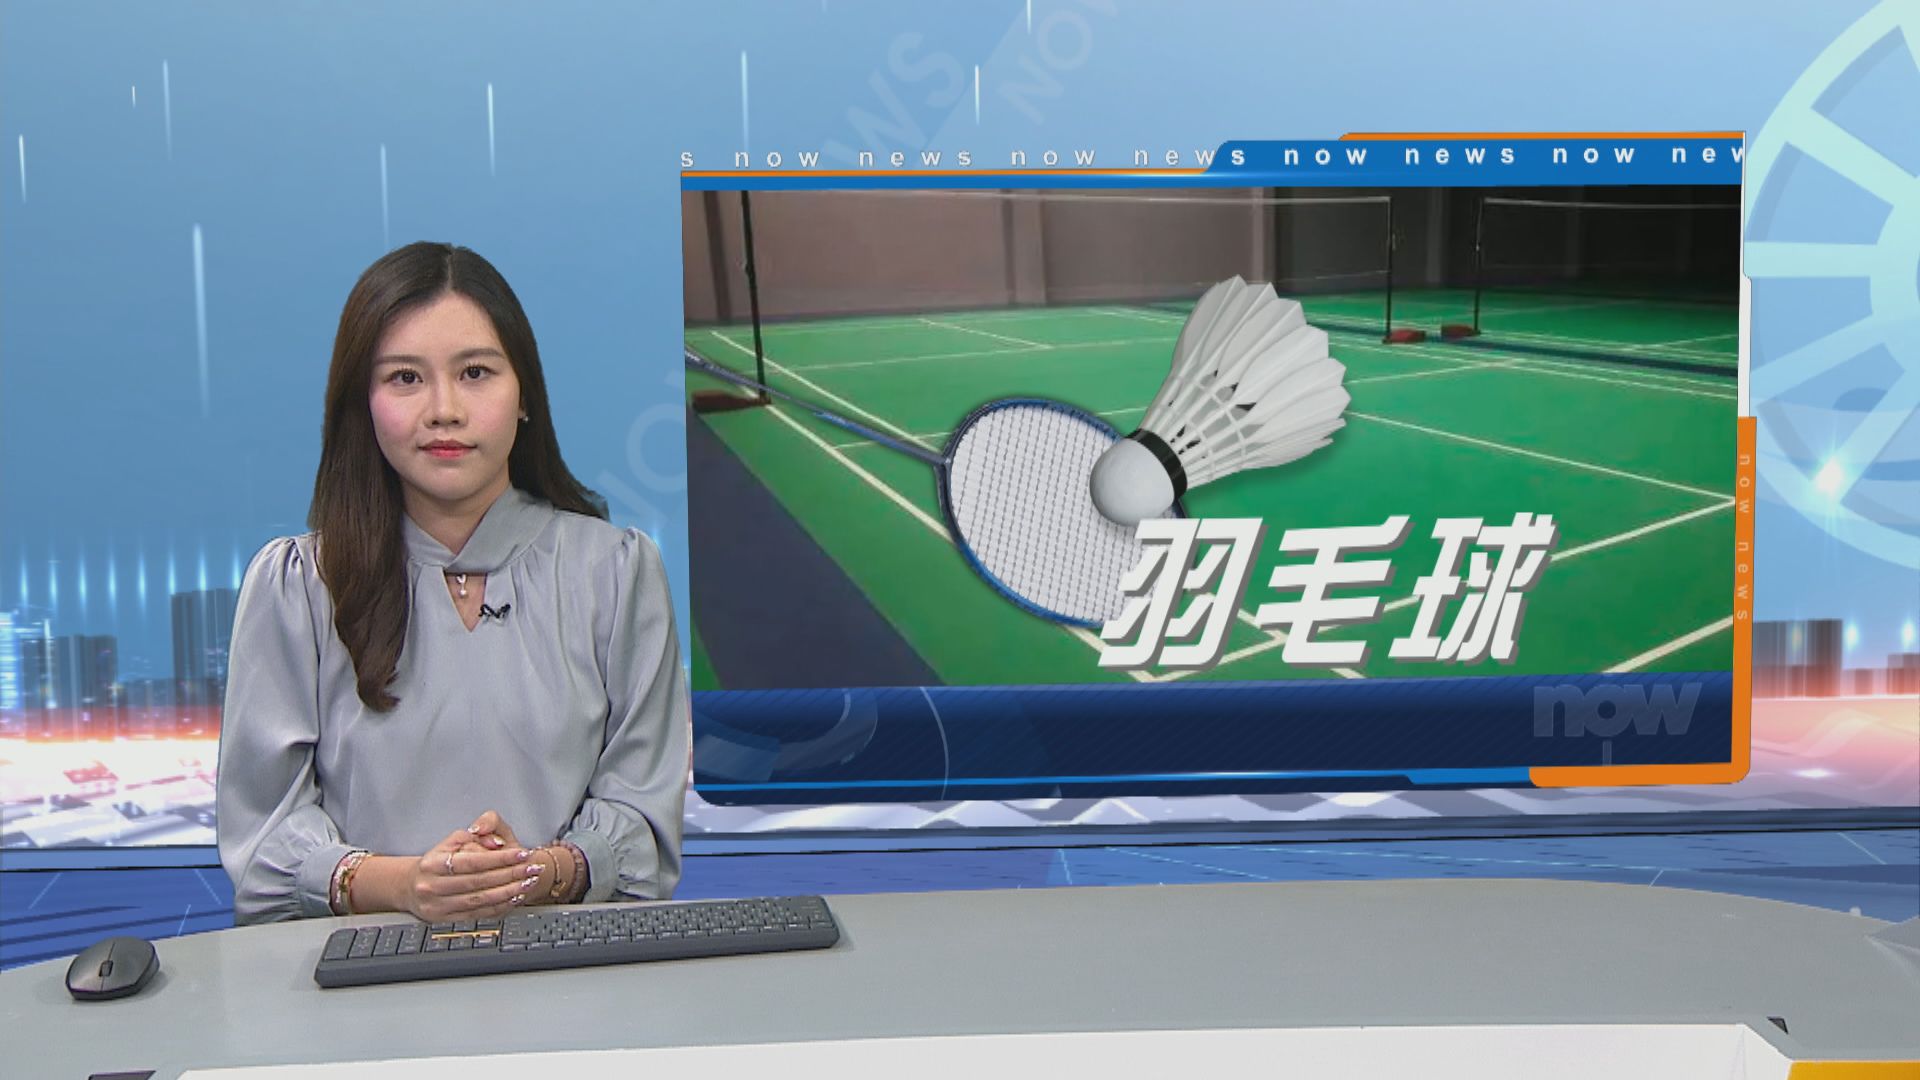 鄧俊文和謝影雪打入全英羽毛球公開賽混雙八強